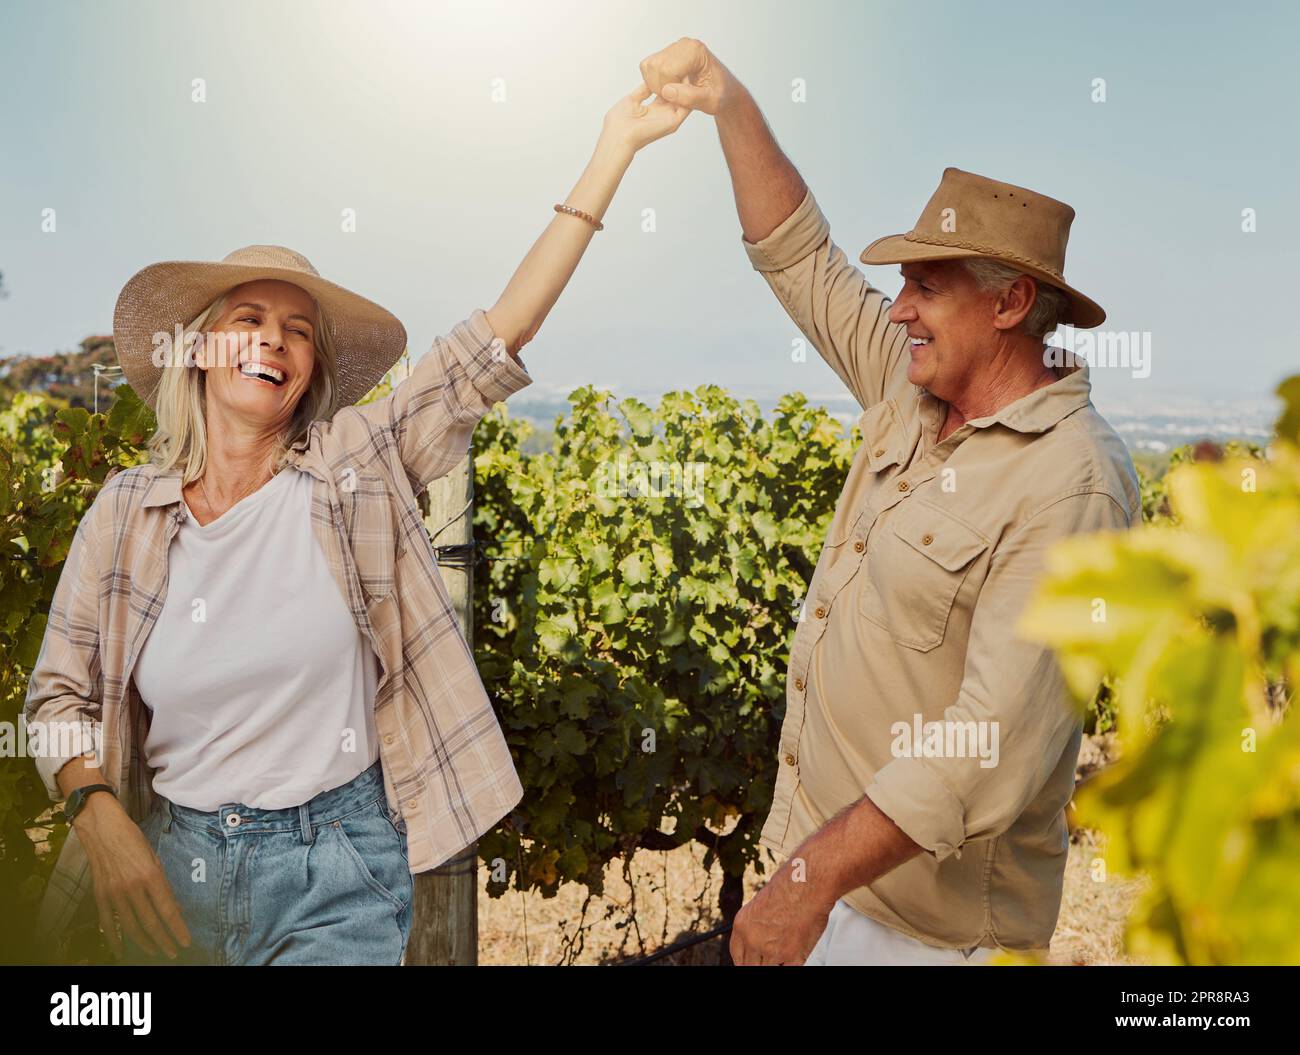 Lächelndes Seniorenpaar tanzt zusammen und fühlt sich verspielt auf dem Weinberg. Weißer Mann und Ehefrau stehen zusammen und genießen einen Tag auf einer Farm nach einem Wochenende mit Weinproben. Mann und Frau amüsieren sich Stockfoto